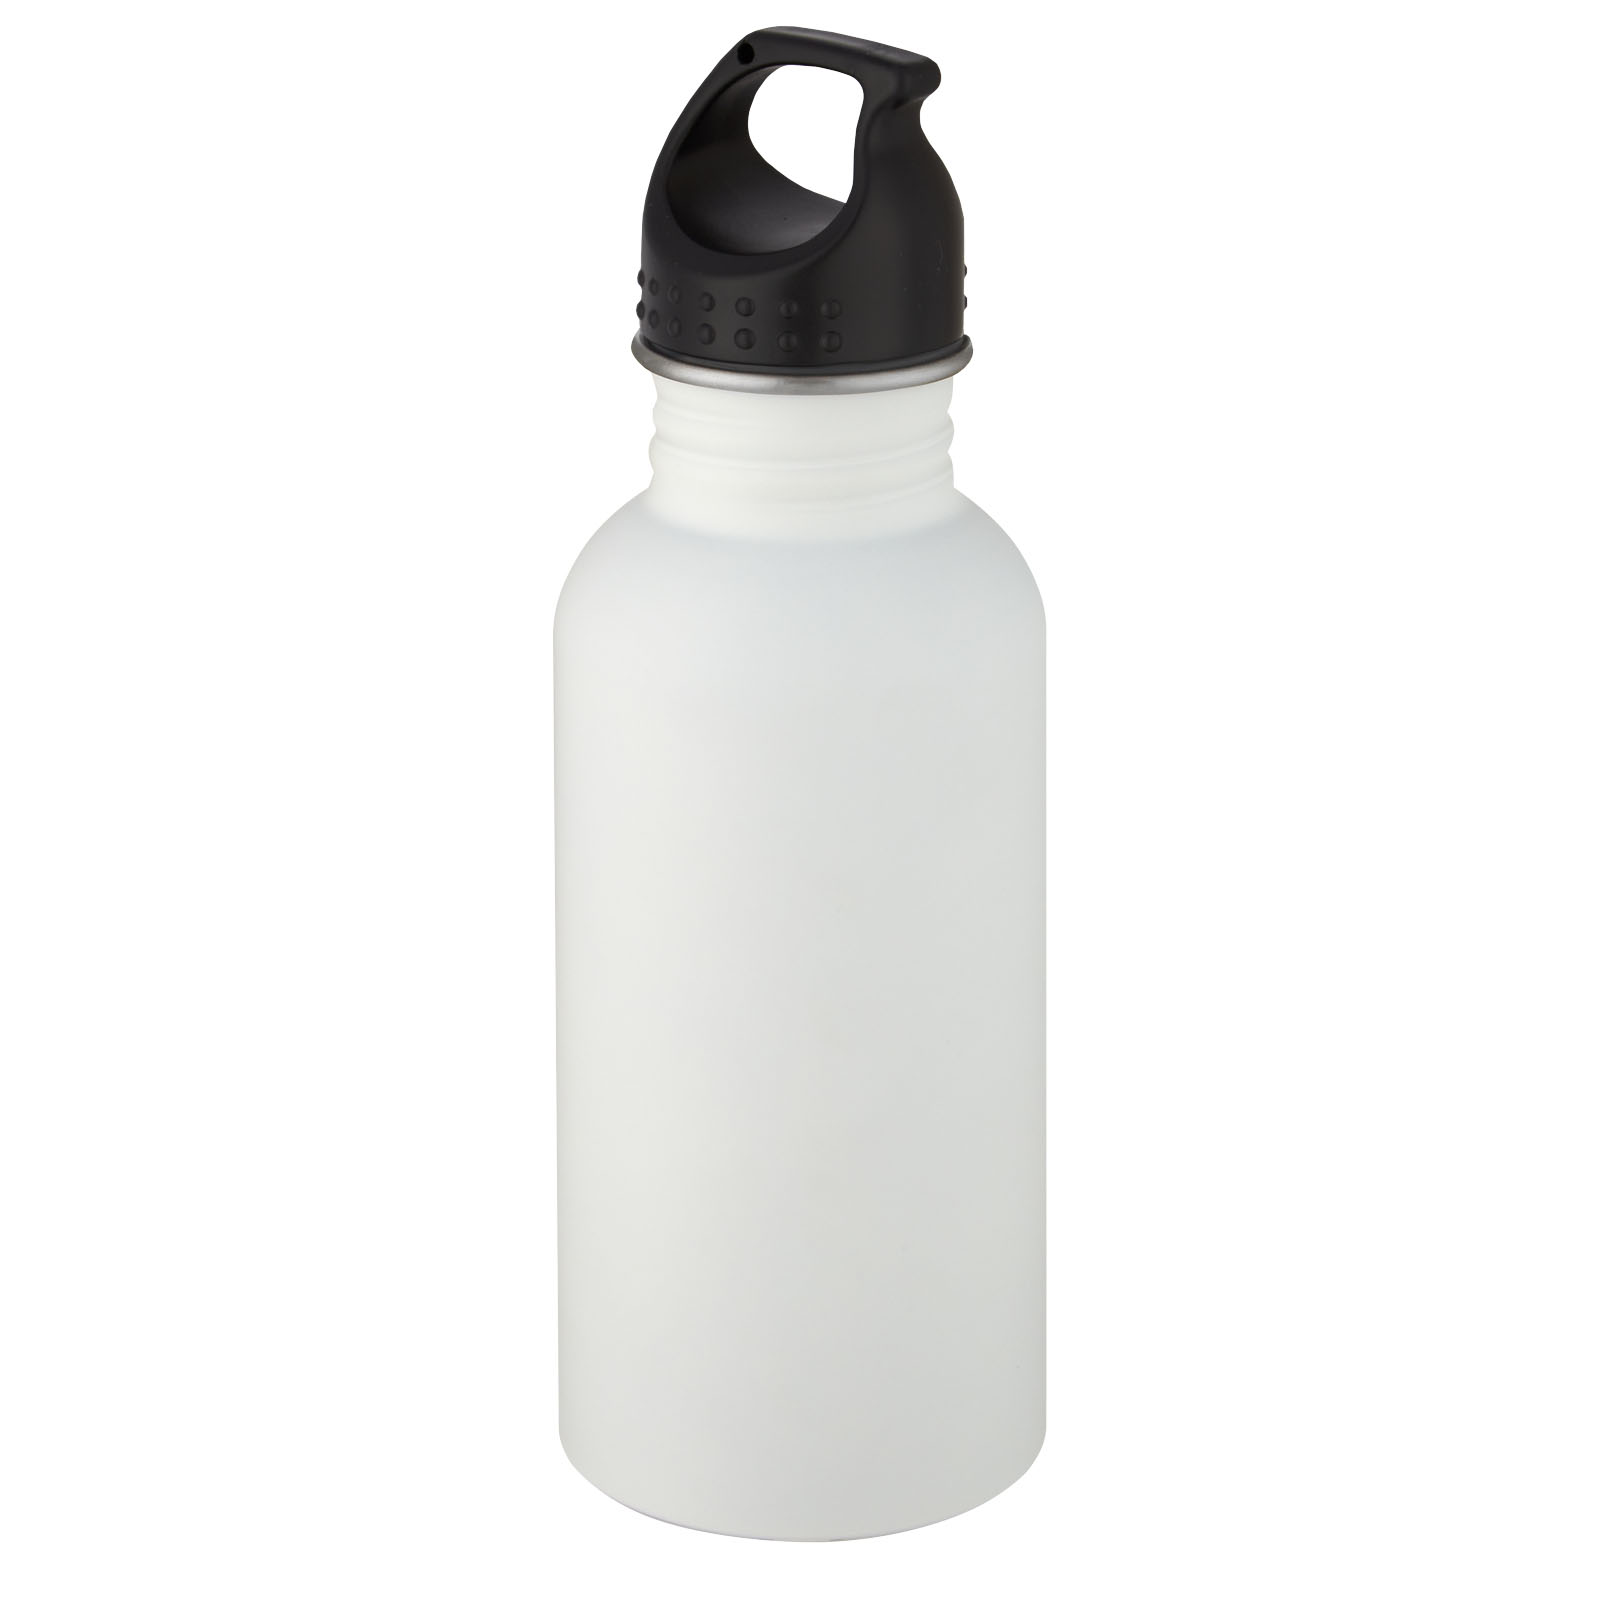 Water bottles - Luca 500 ml stainless steel water bottle